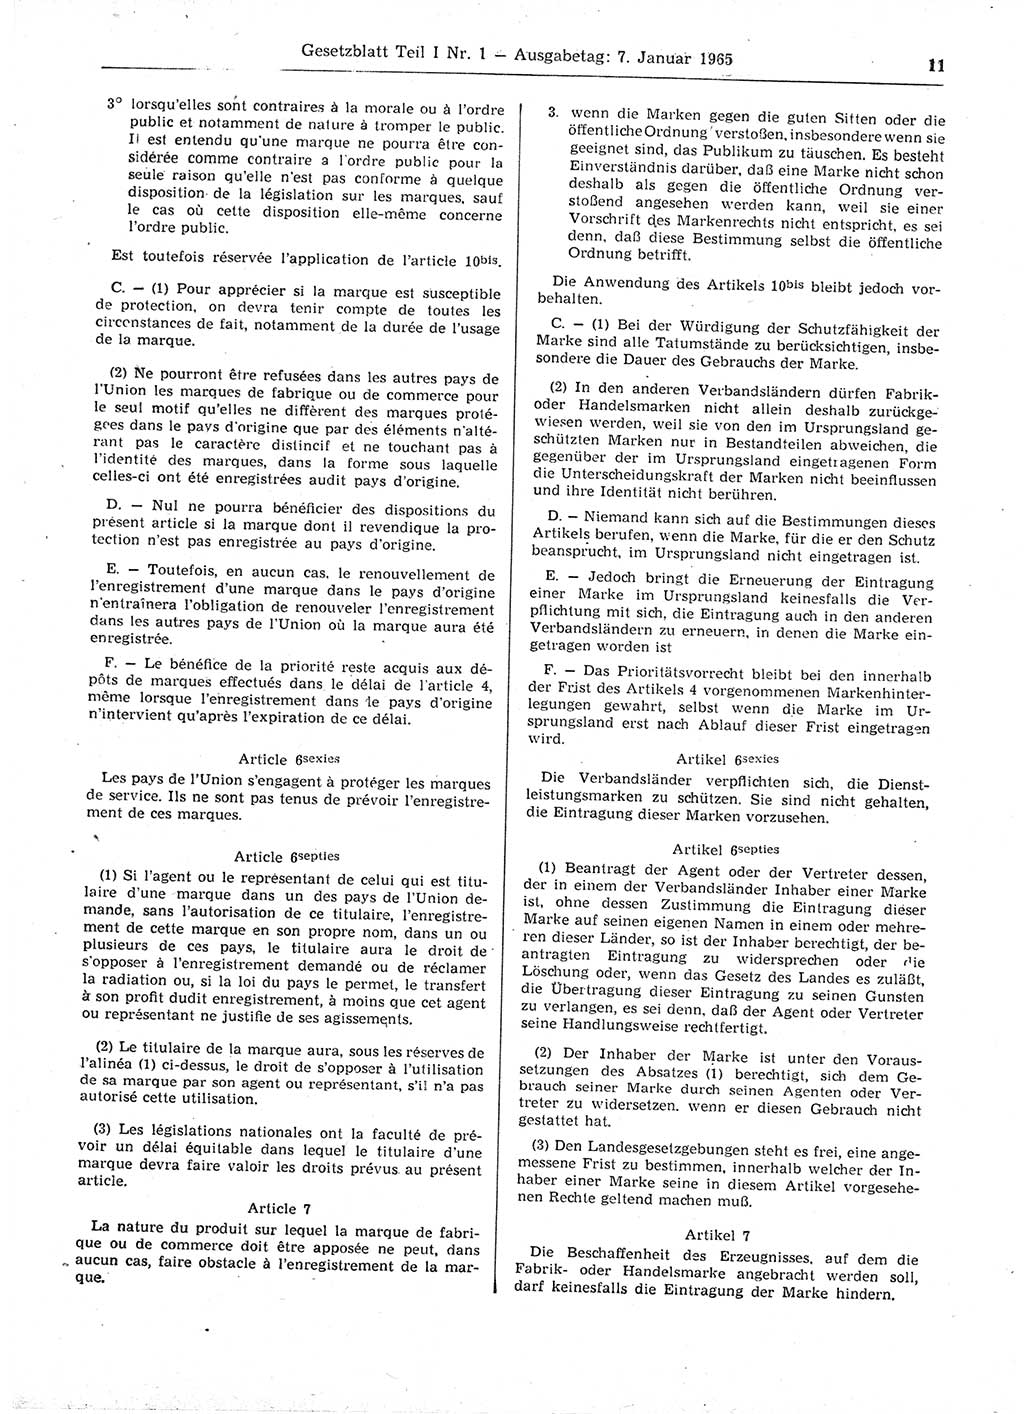 Gesetzblatt (GBl.) der Deutschen Demokratischen Republik (DDR) Teil Ⅰ 1965, Seite 11 (GBl. DDR Ⅰ 1965, S. 11)